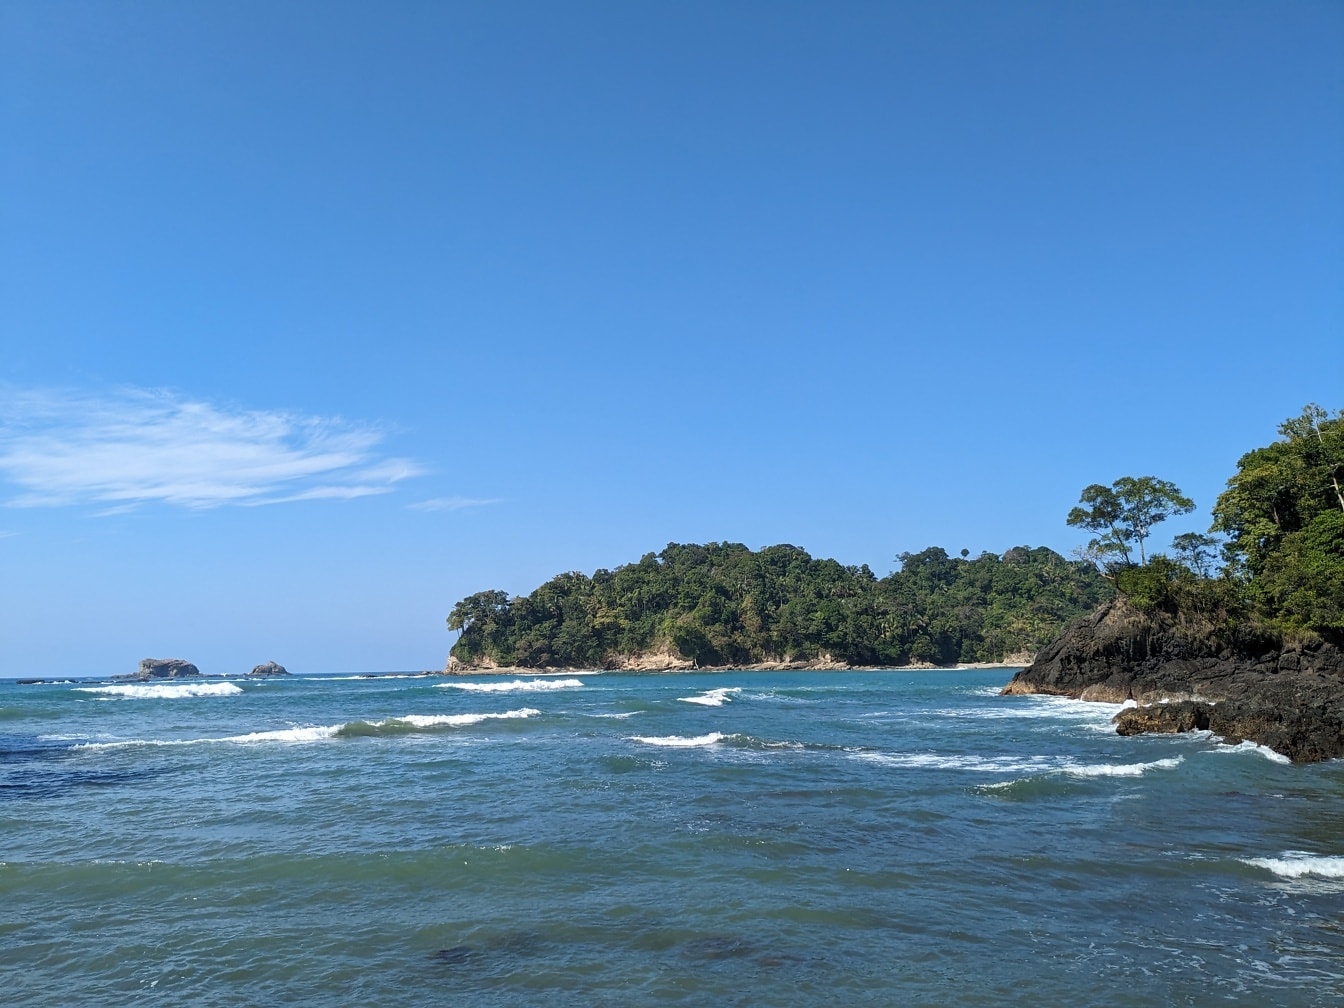 Tengeri tájkép Costa Rica nemzeti parkjában